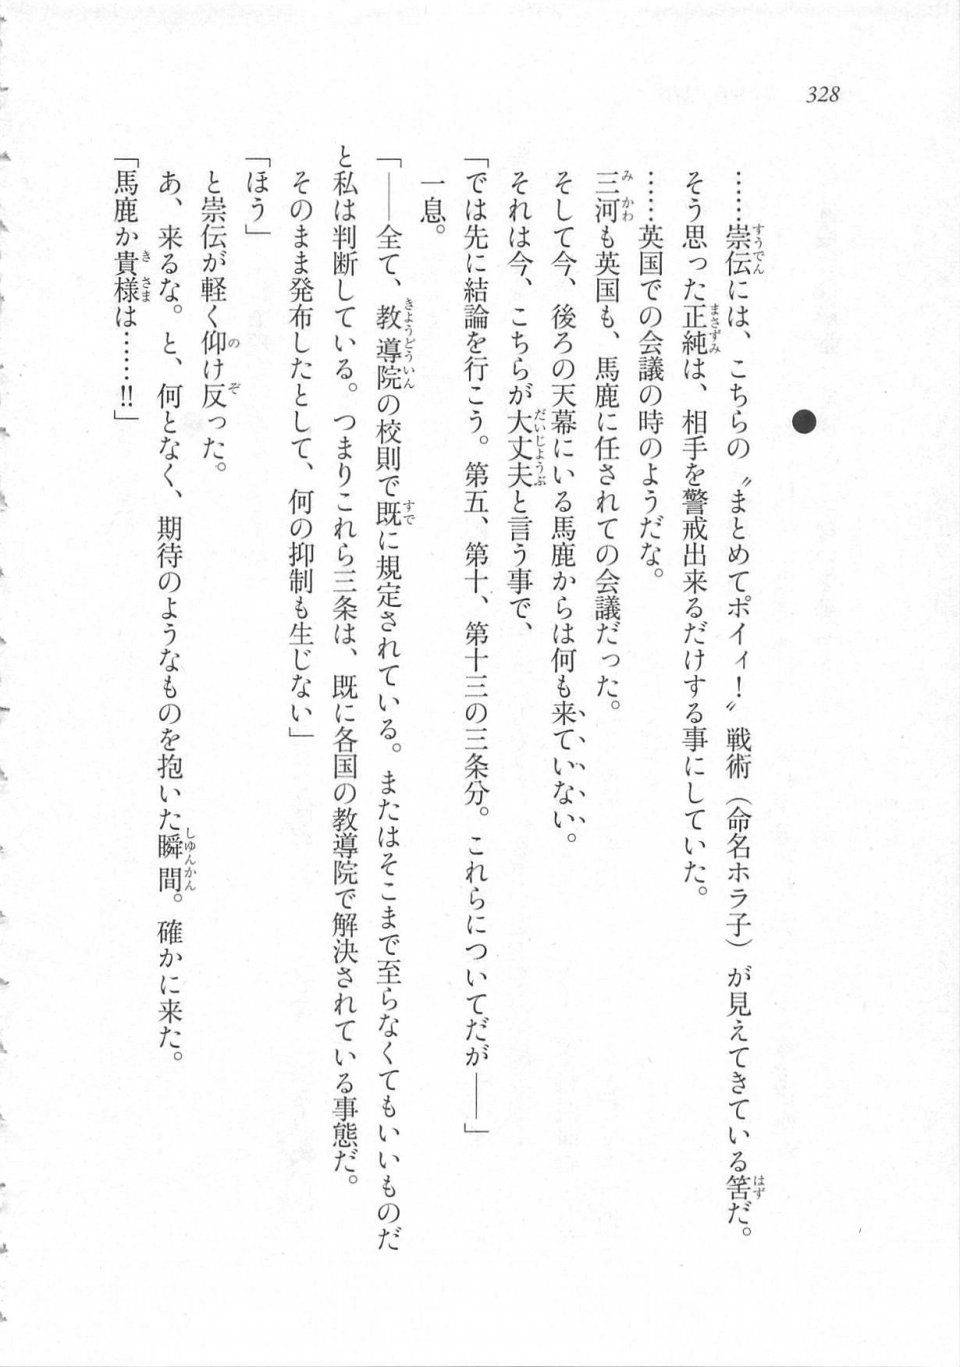 Kyoukai Senjou no Horizon LN Sidestory Vol 3 - Photo #332